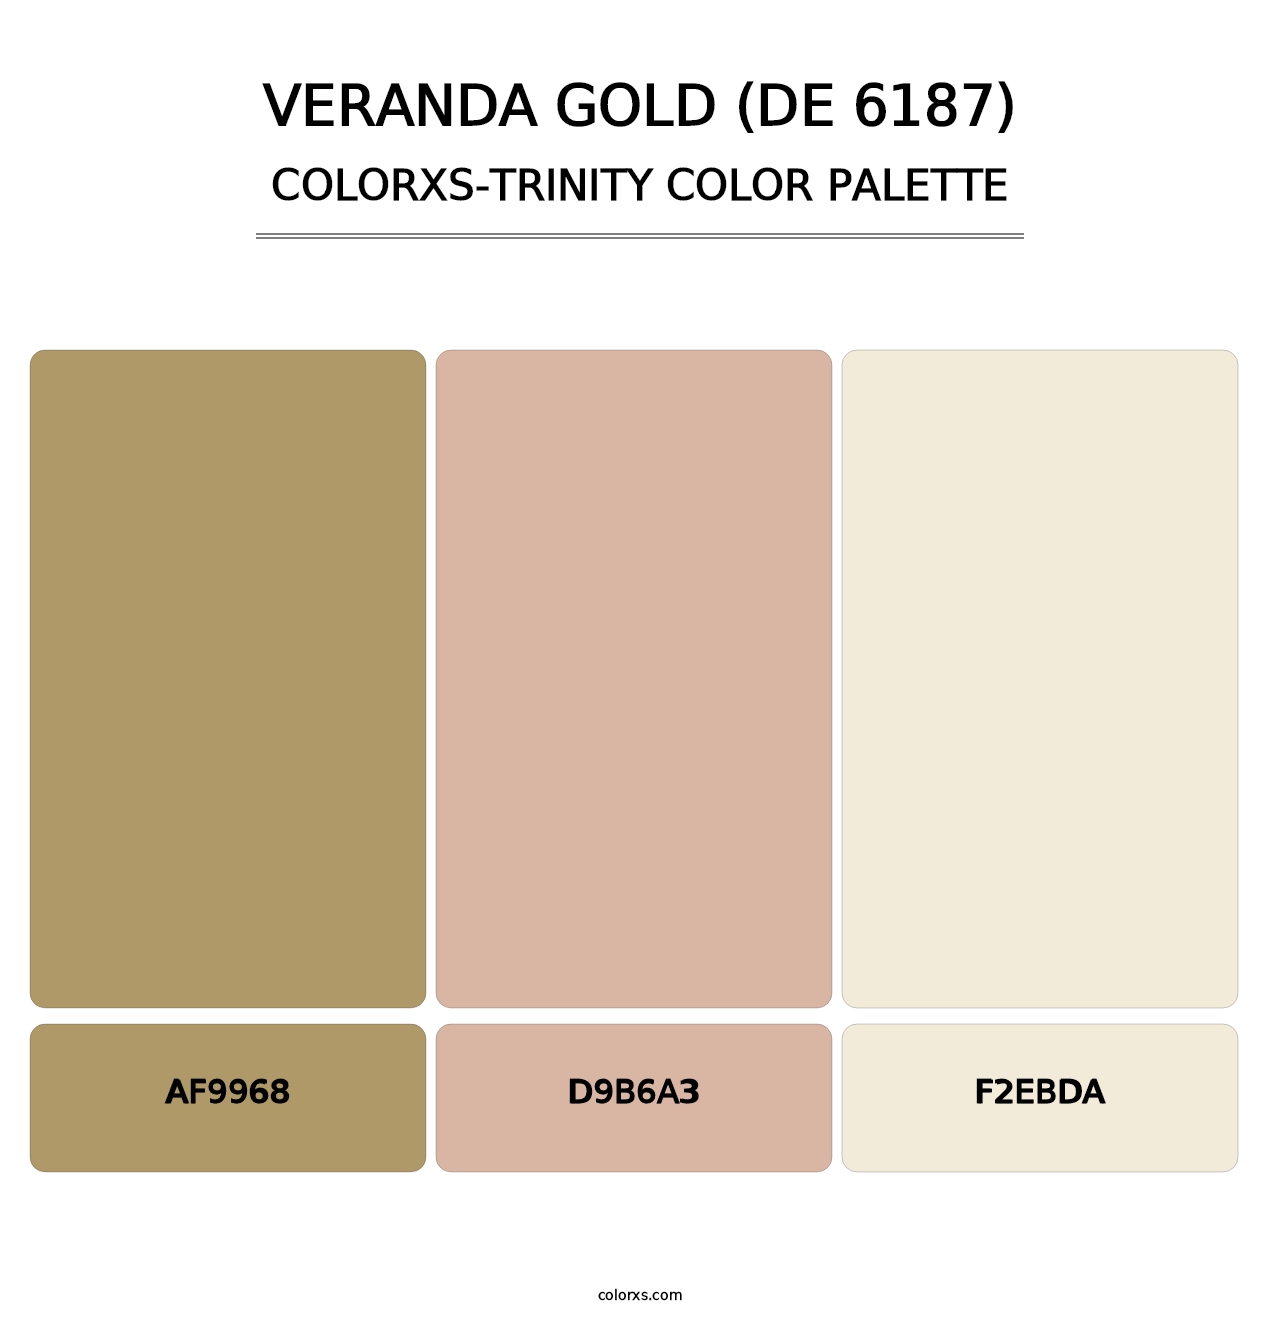 Veranda Gold (DE 6187) - Colorxs Trinity Palette